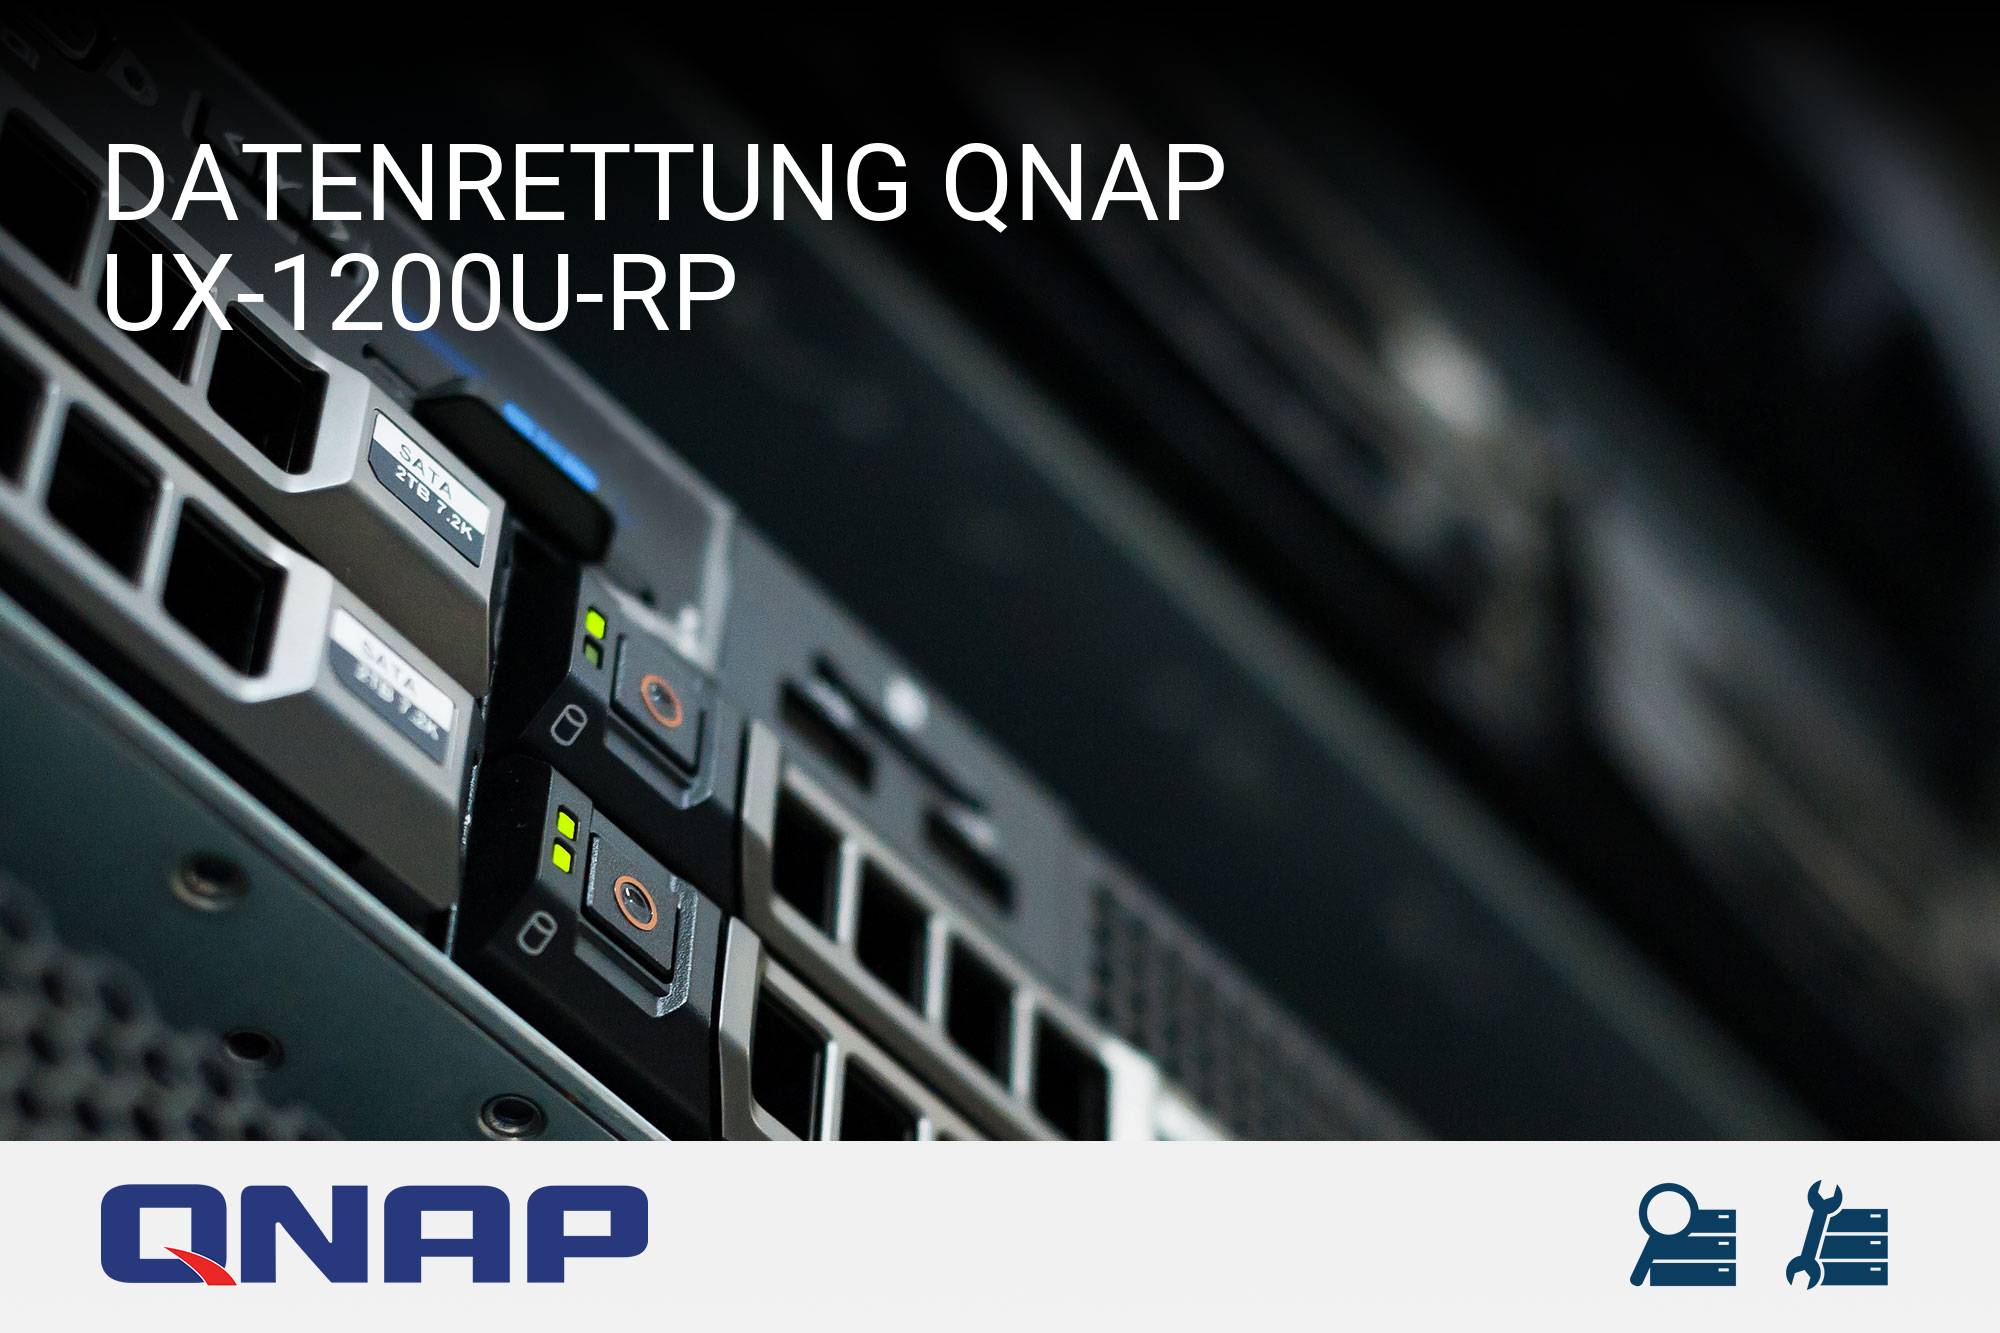 QNAP UX-1200U-RP